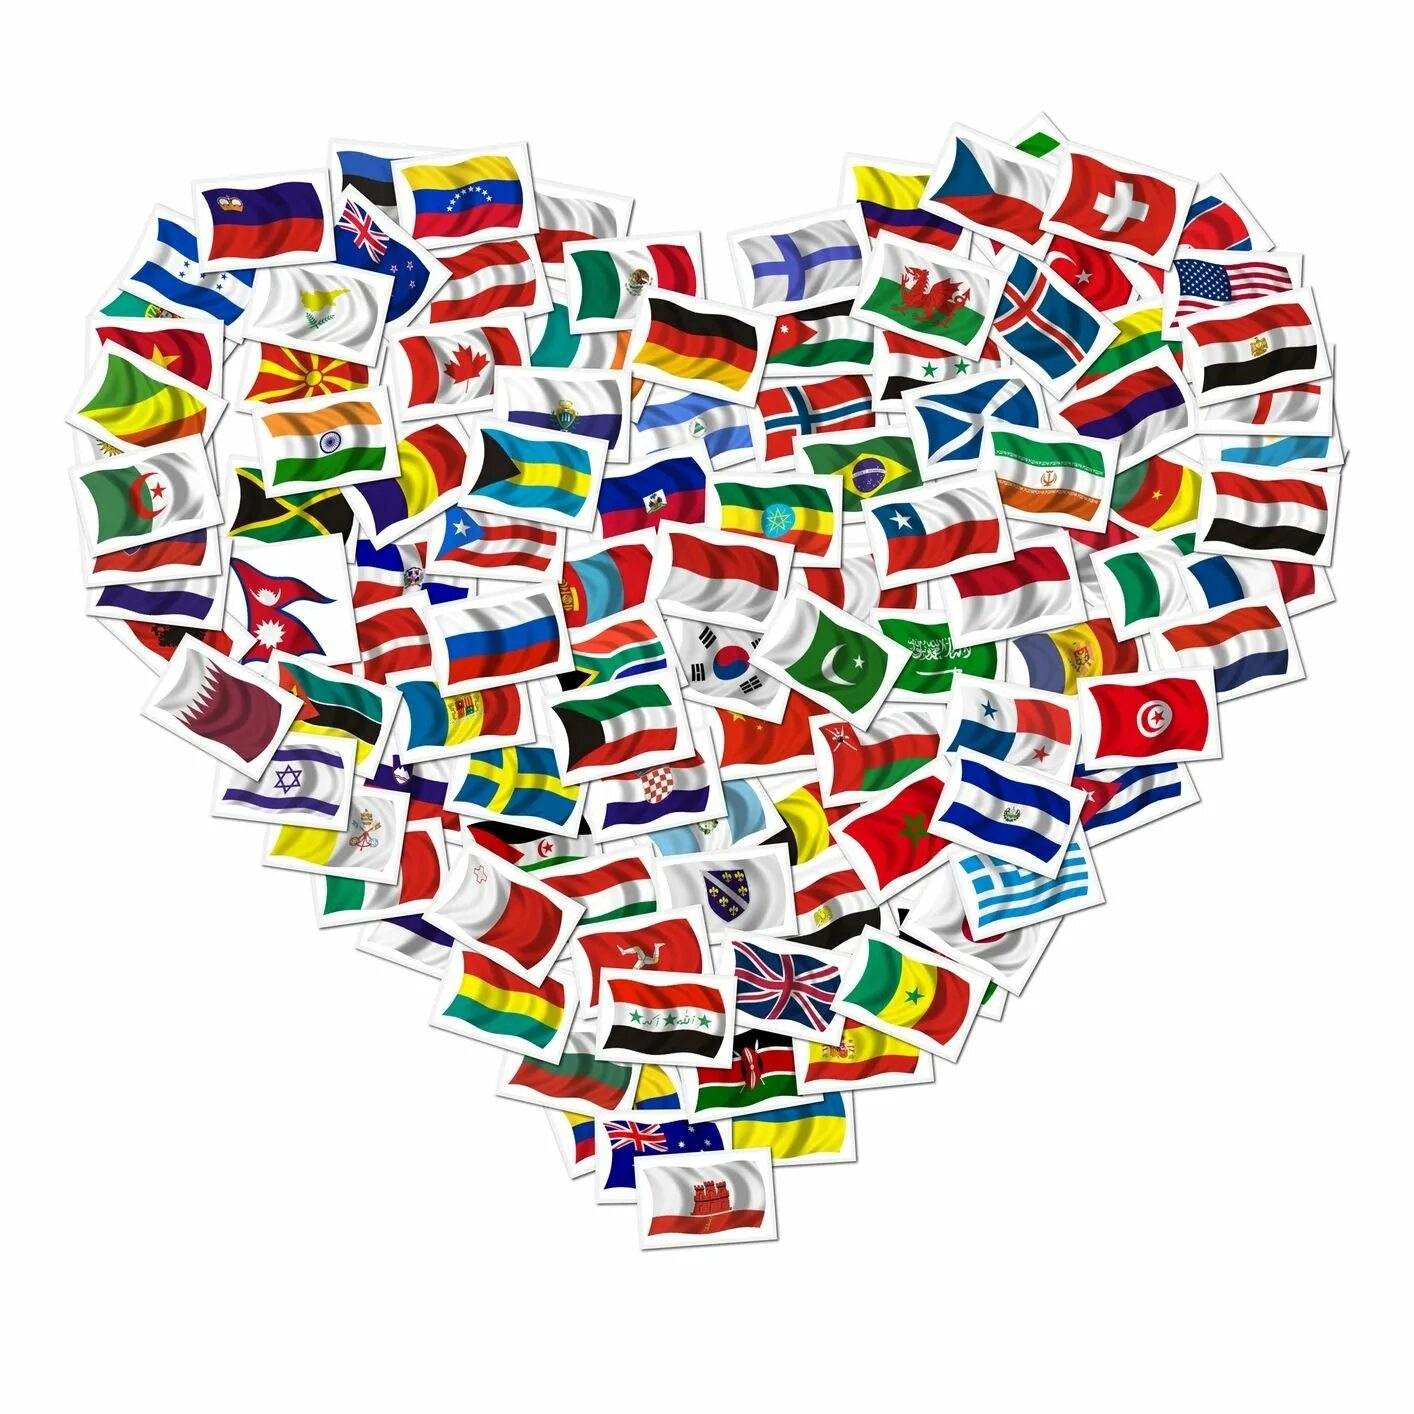 Рисунки всех стран. Флаг дружбы народов. Разные языки. Флаги государств.